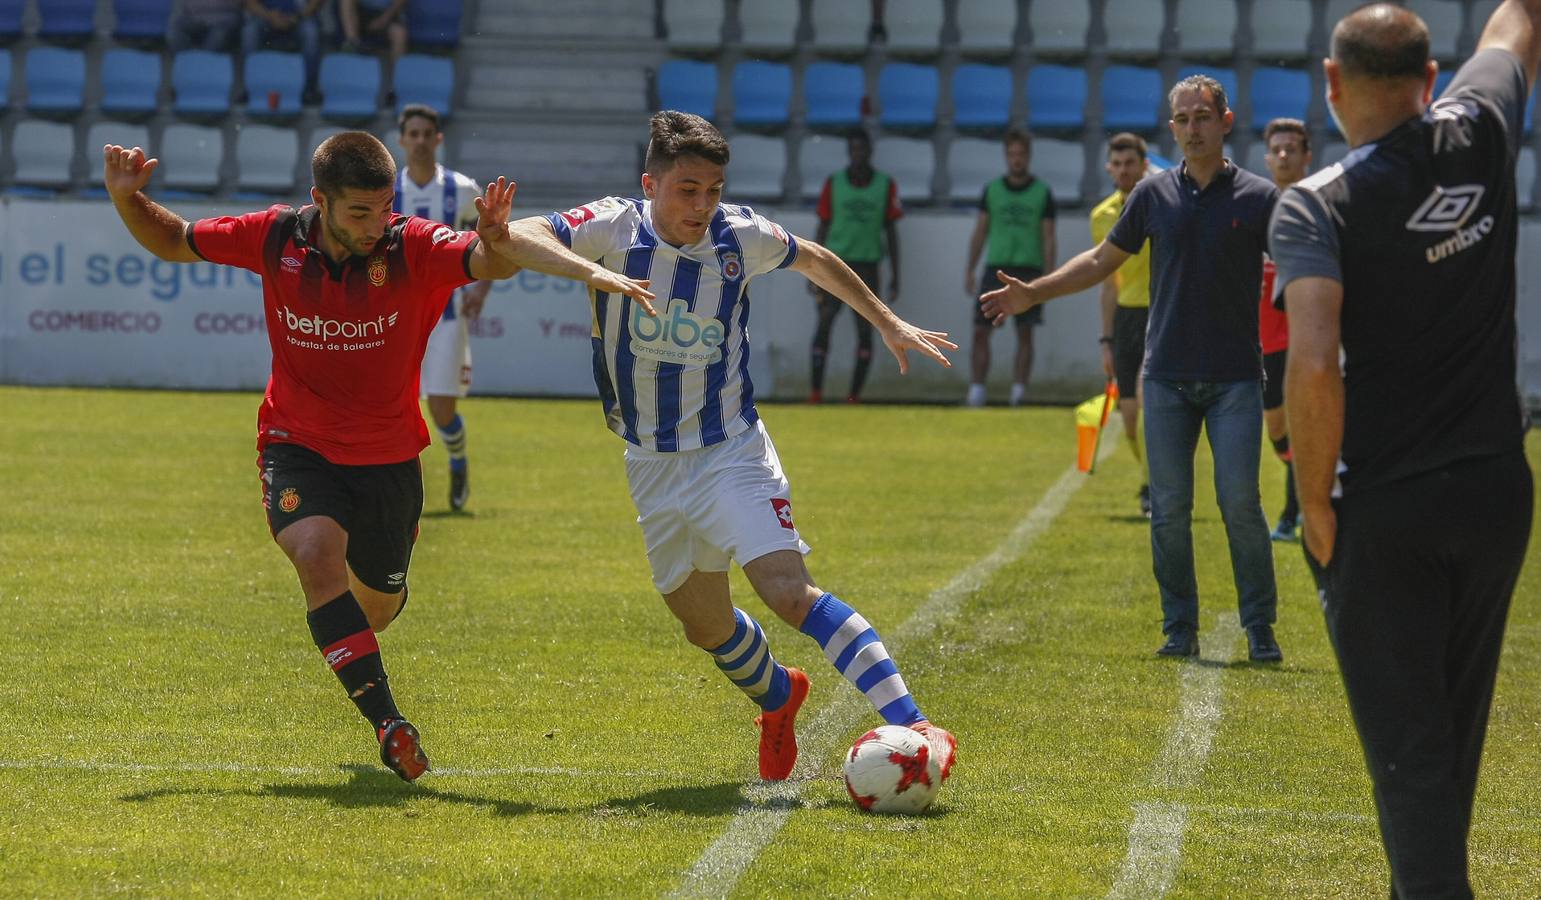 El equipo torrelaveguense jugará la vuelta en Mallorca con tres goles de ventaja | Juanma Barbero, Nacho Rodríguez, en dos ocasiones, y Lucho han sido los goleadores gimnásticos